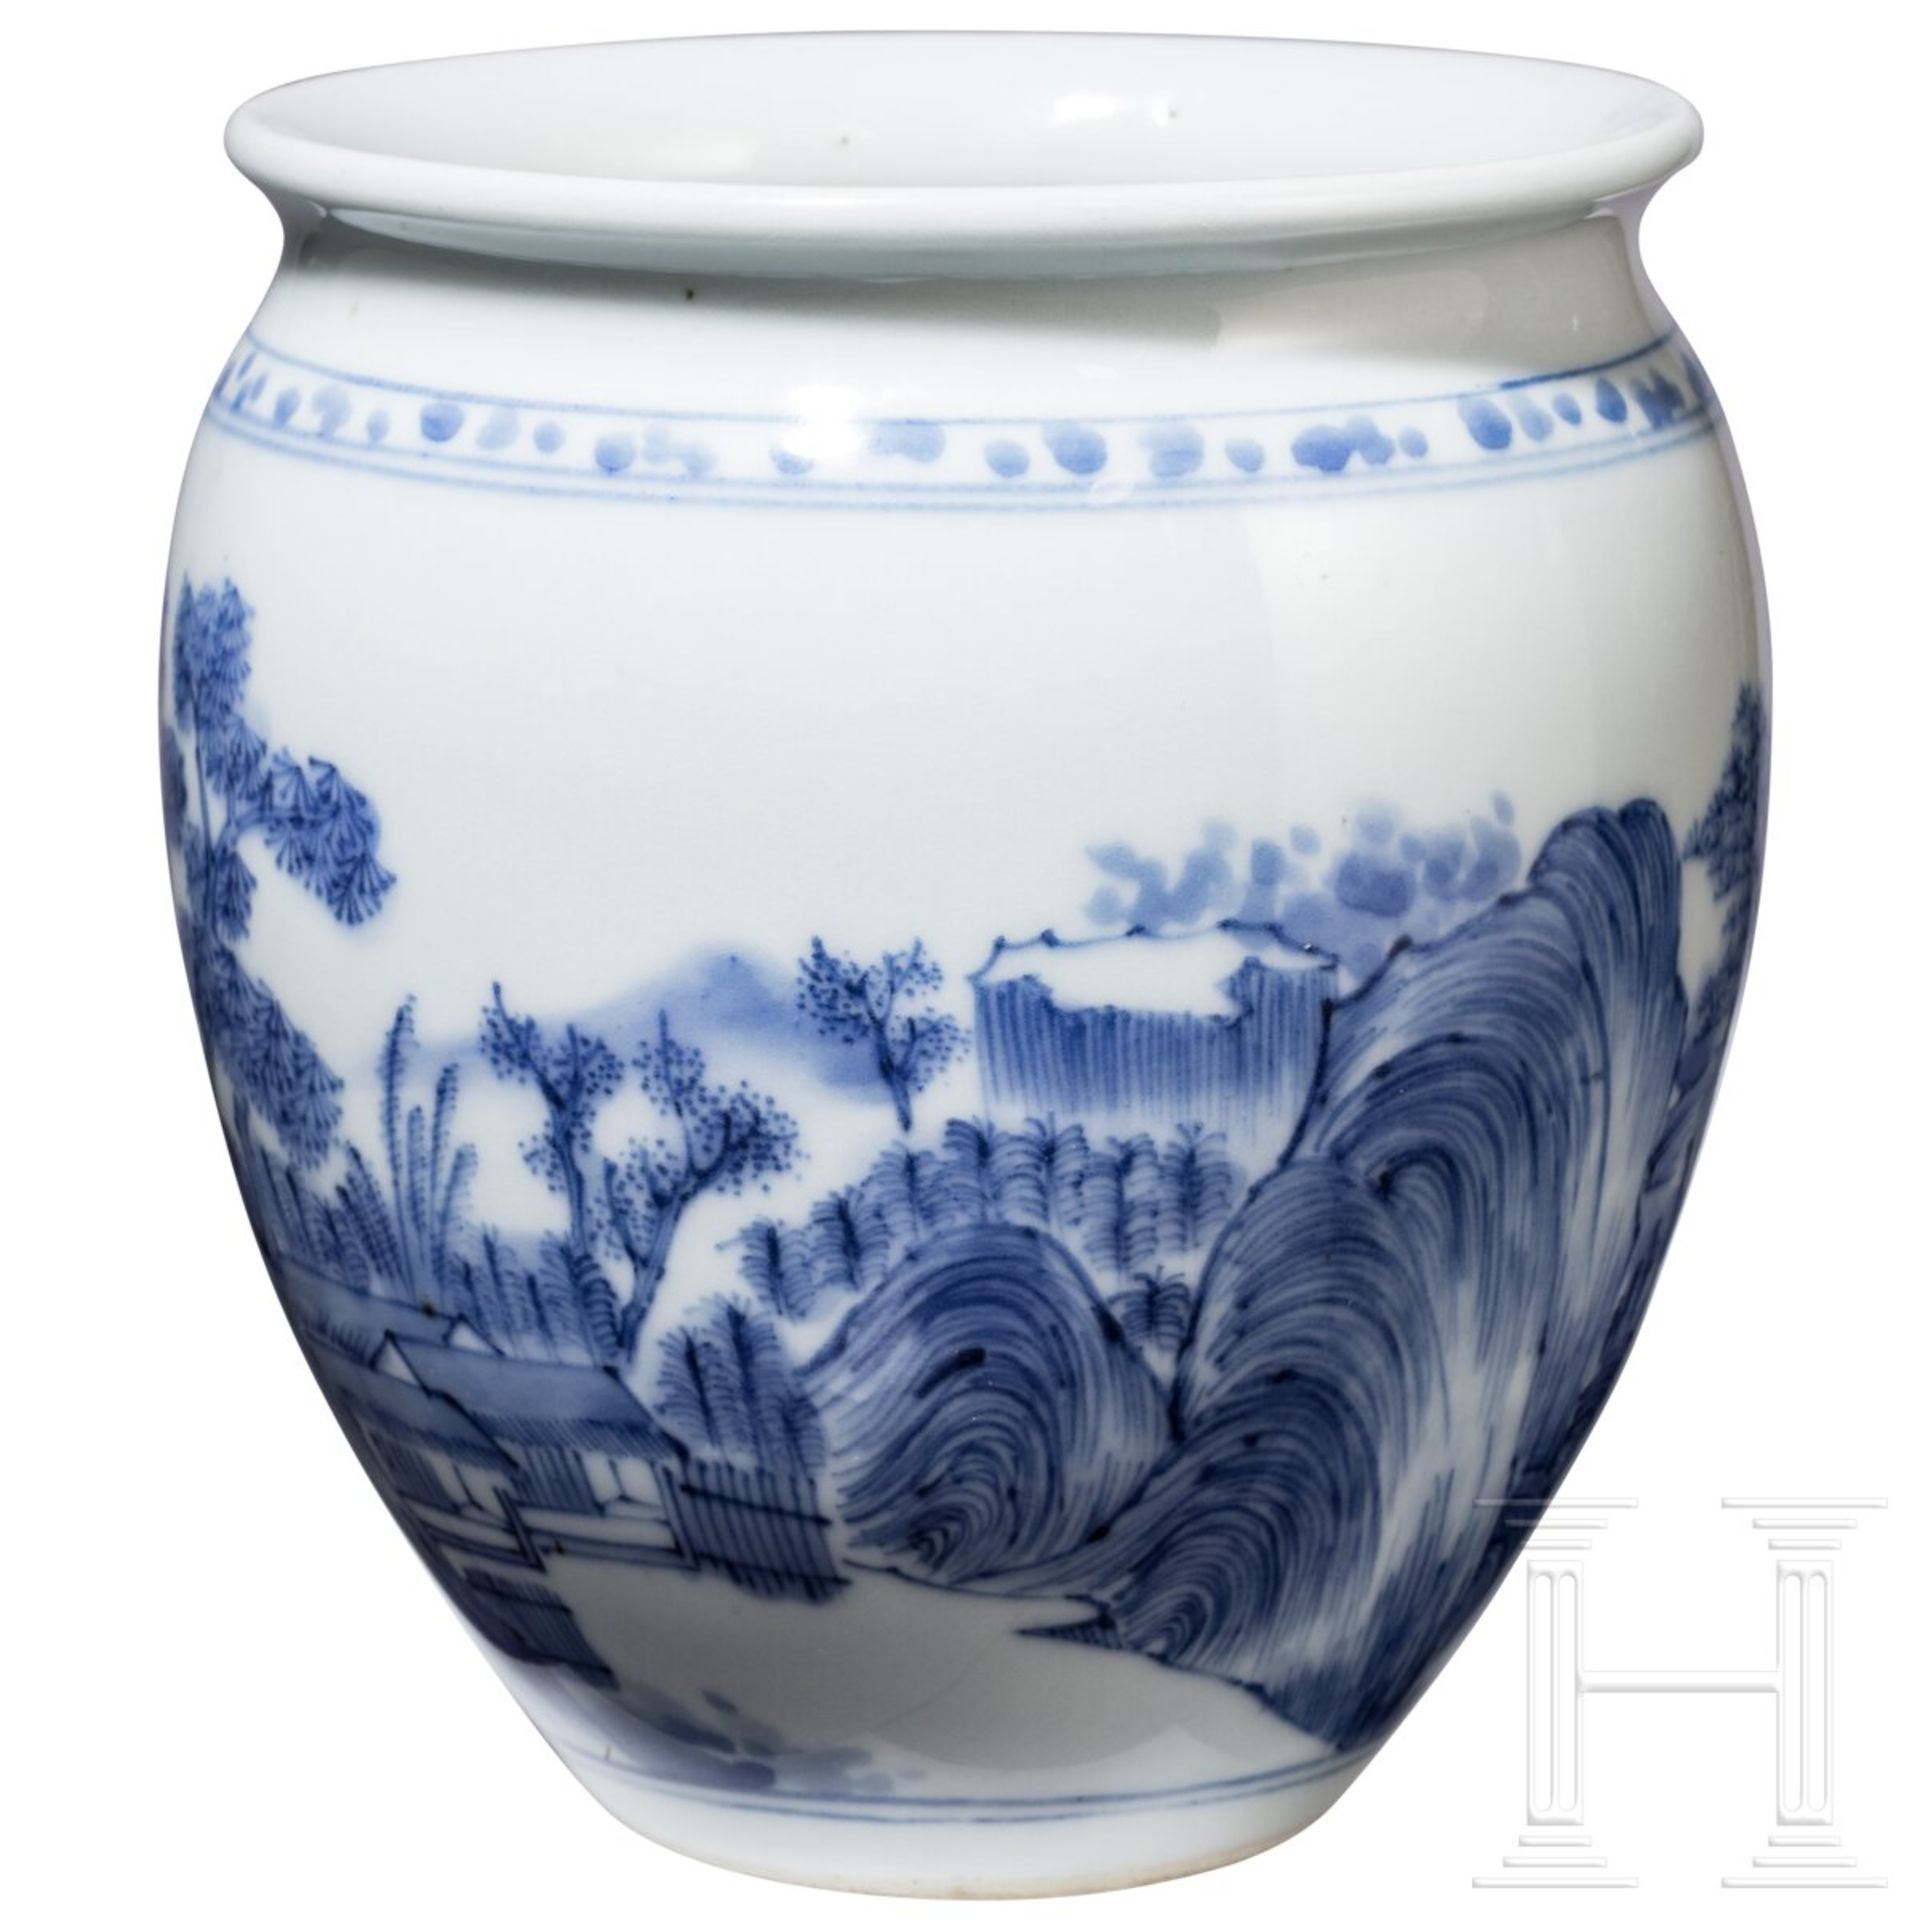 Blau-weiße Vase mit Seenlandschaft, China, wohl Kangxi-Periode (18. Jhdt.) - Bild 3 aus 15